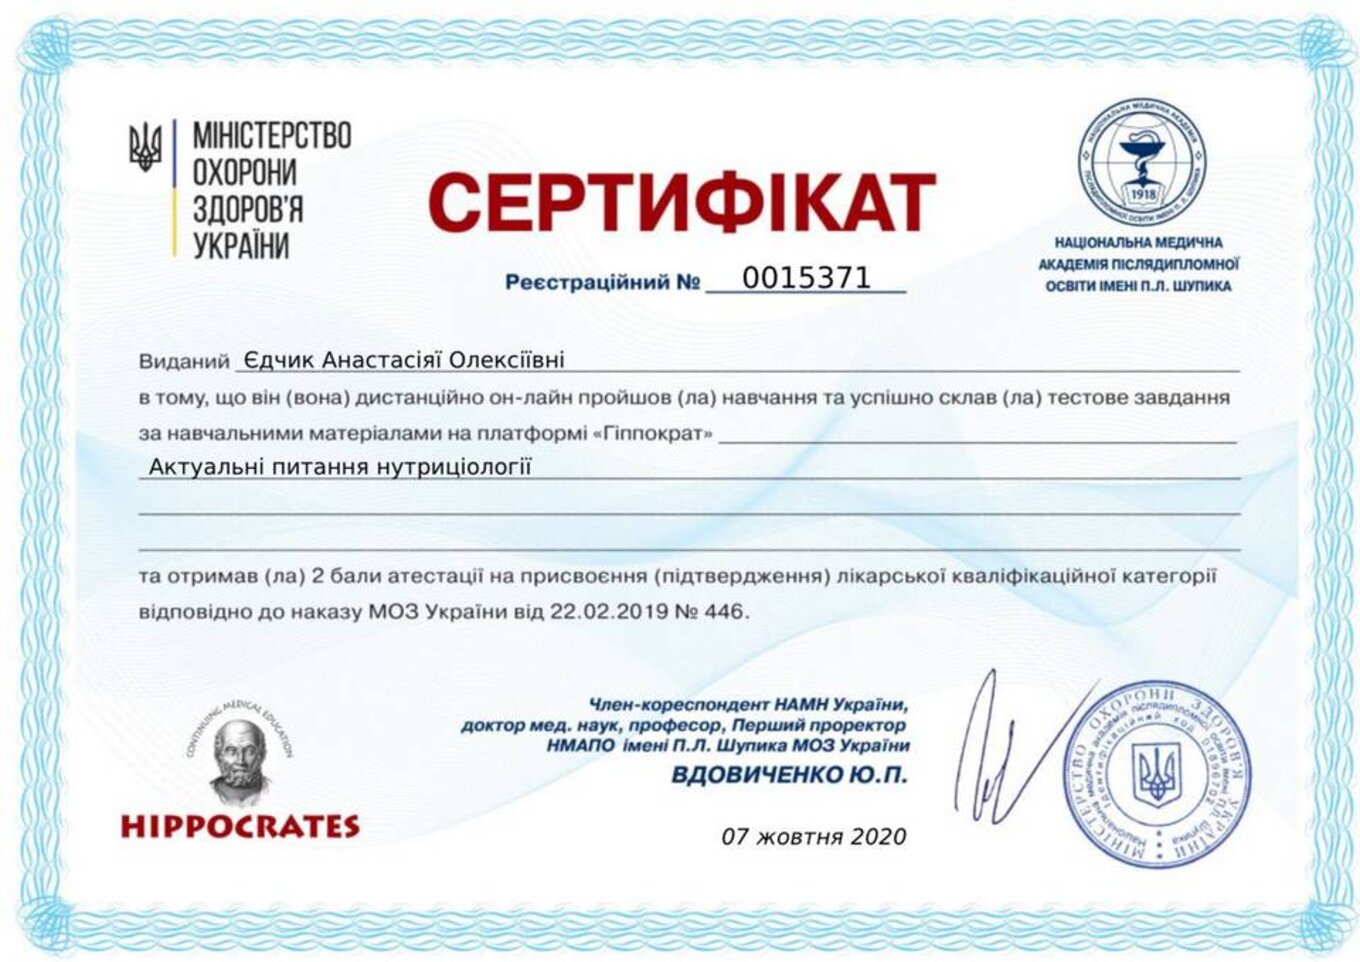 certificates/yedchik-anastasiya-oleksiyivna/erc-edchik-cert-46.jpg